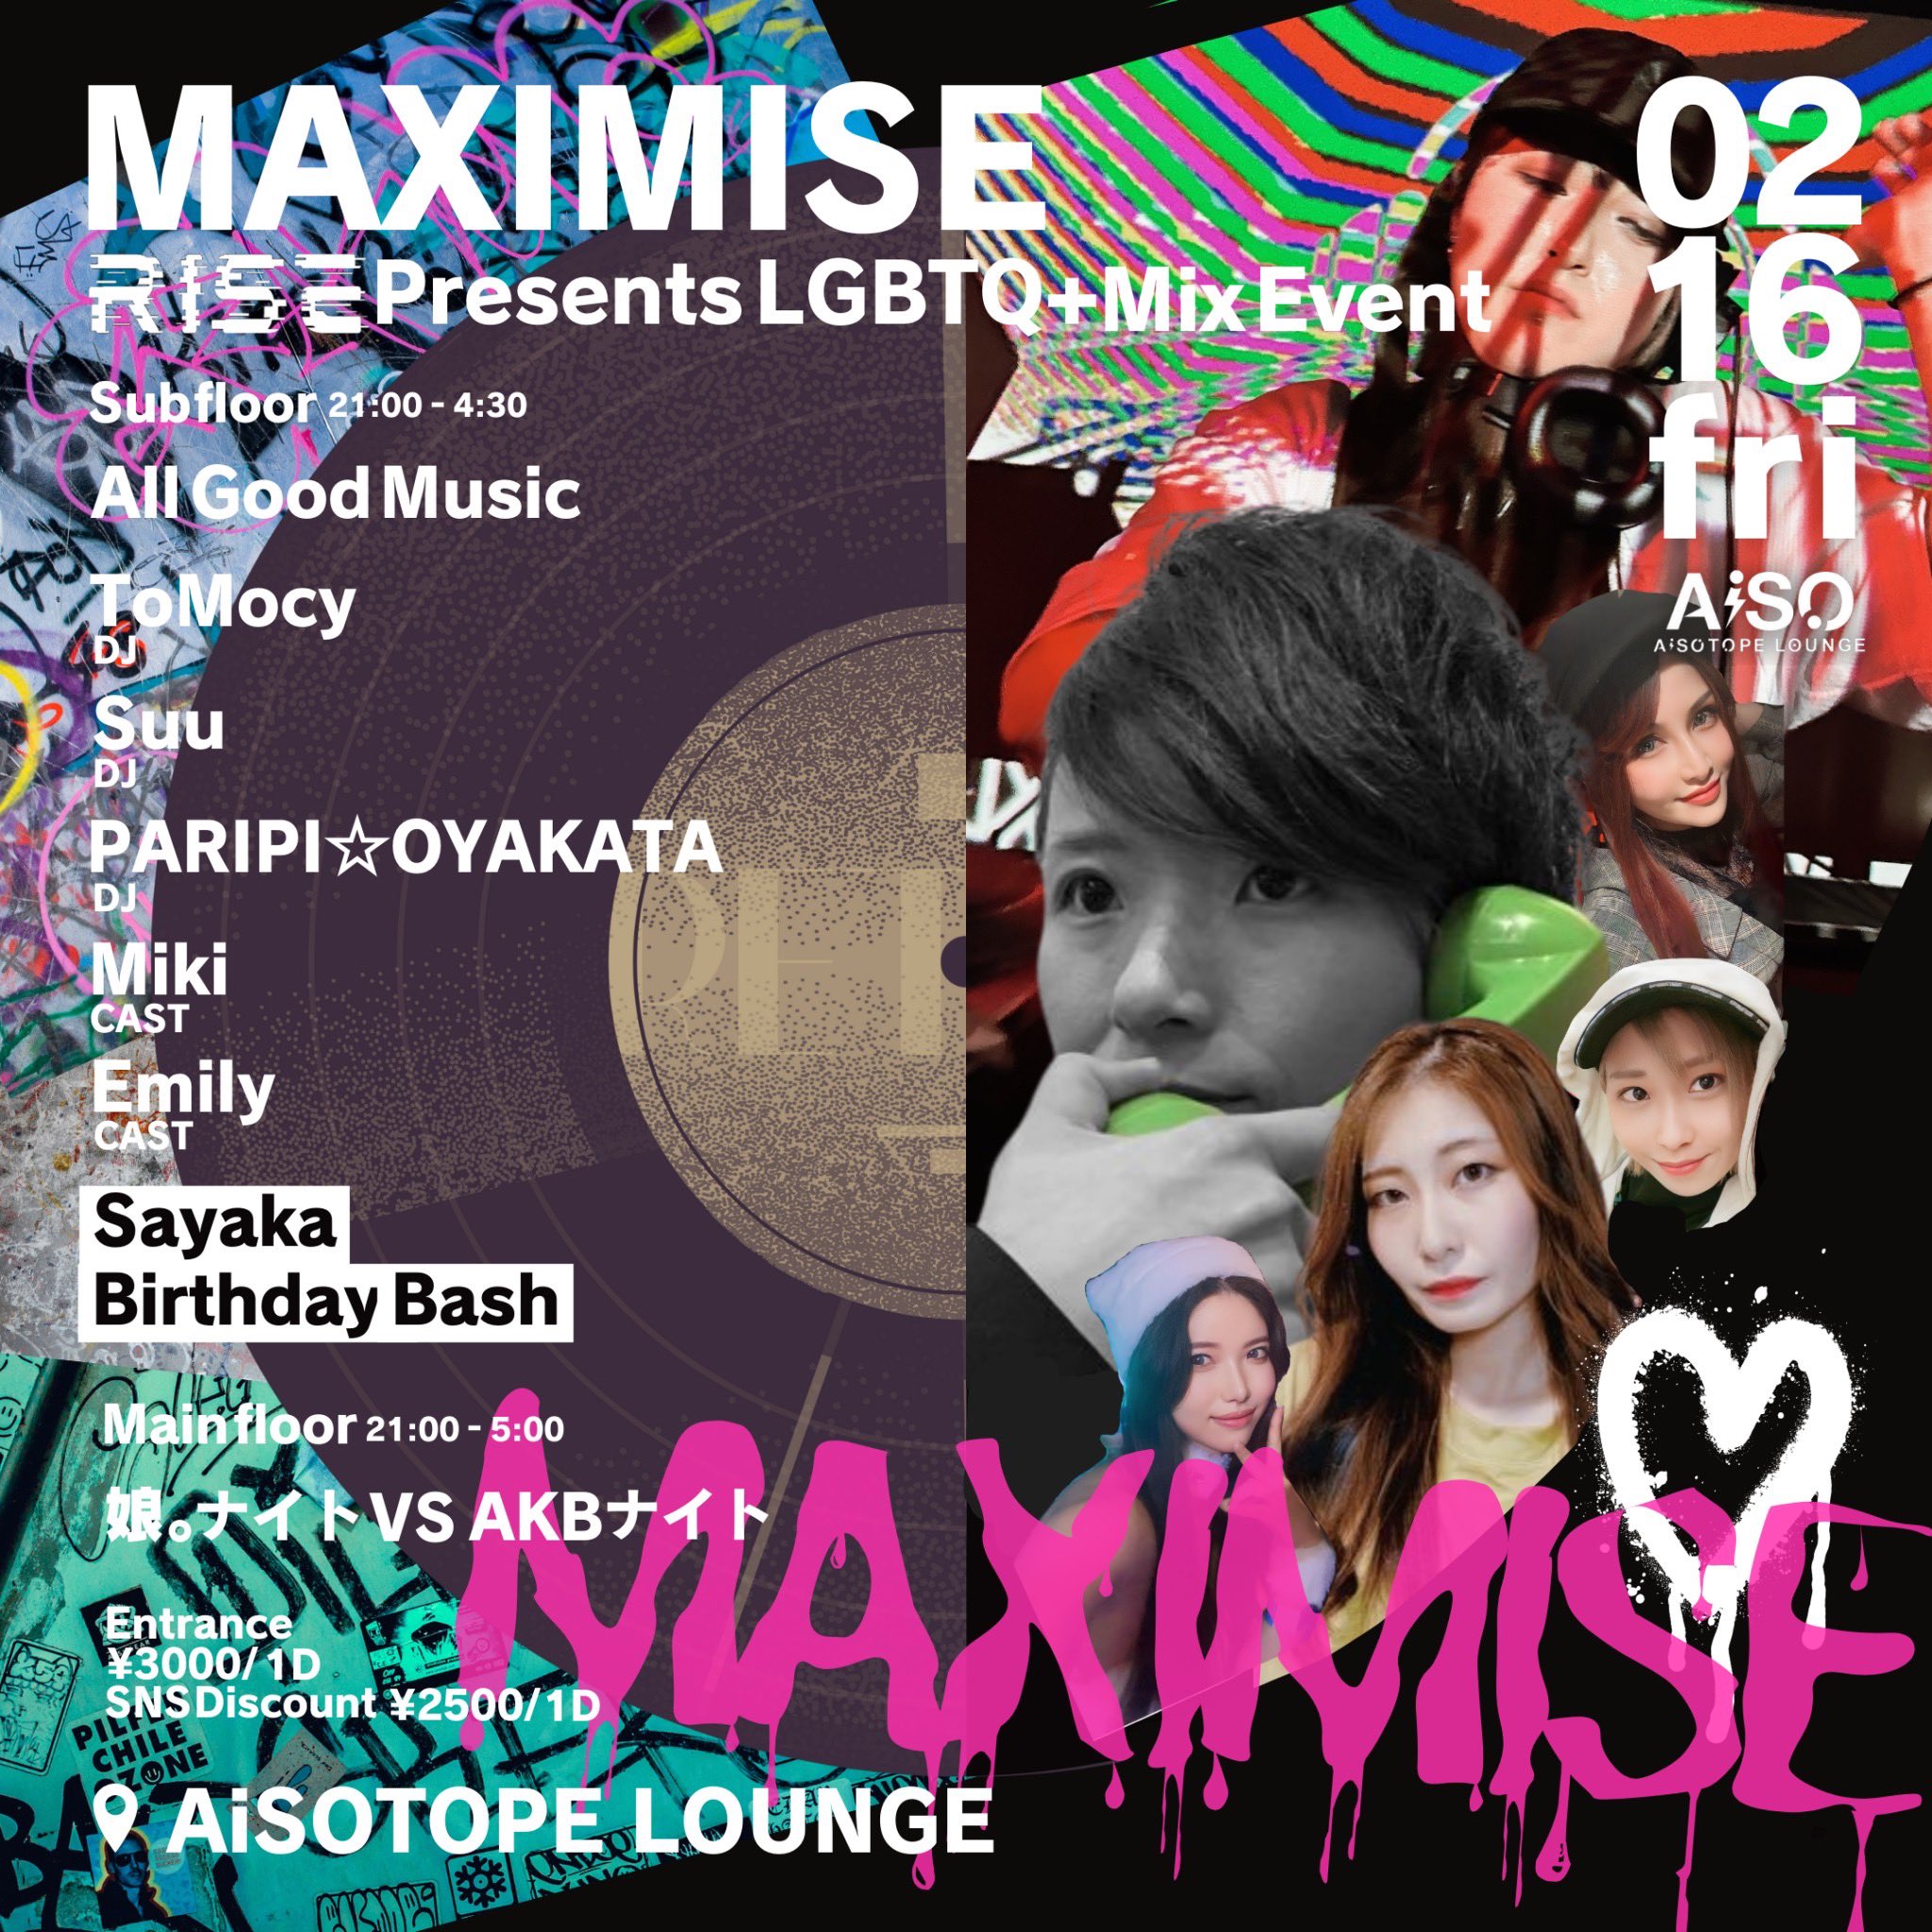 MAXIMISE -RISE presents LGBTQ+ MIX EVENT-